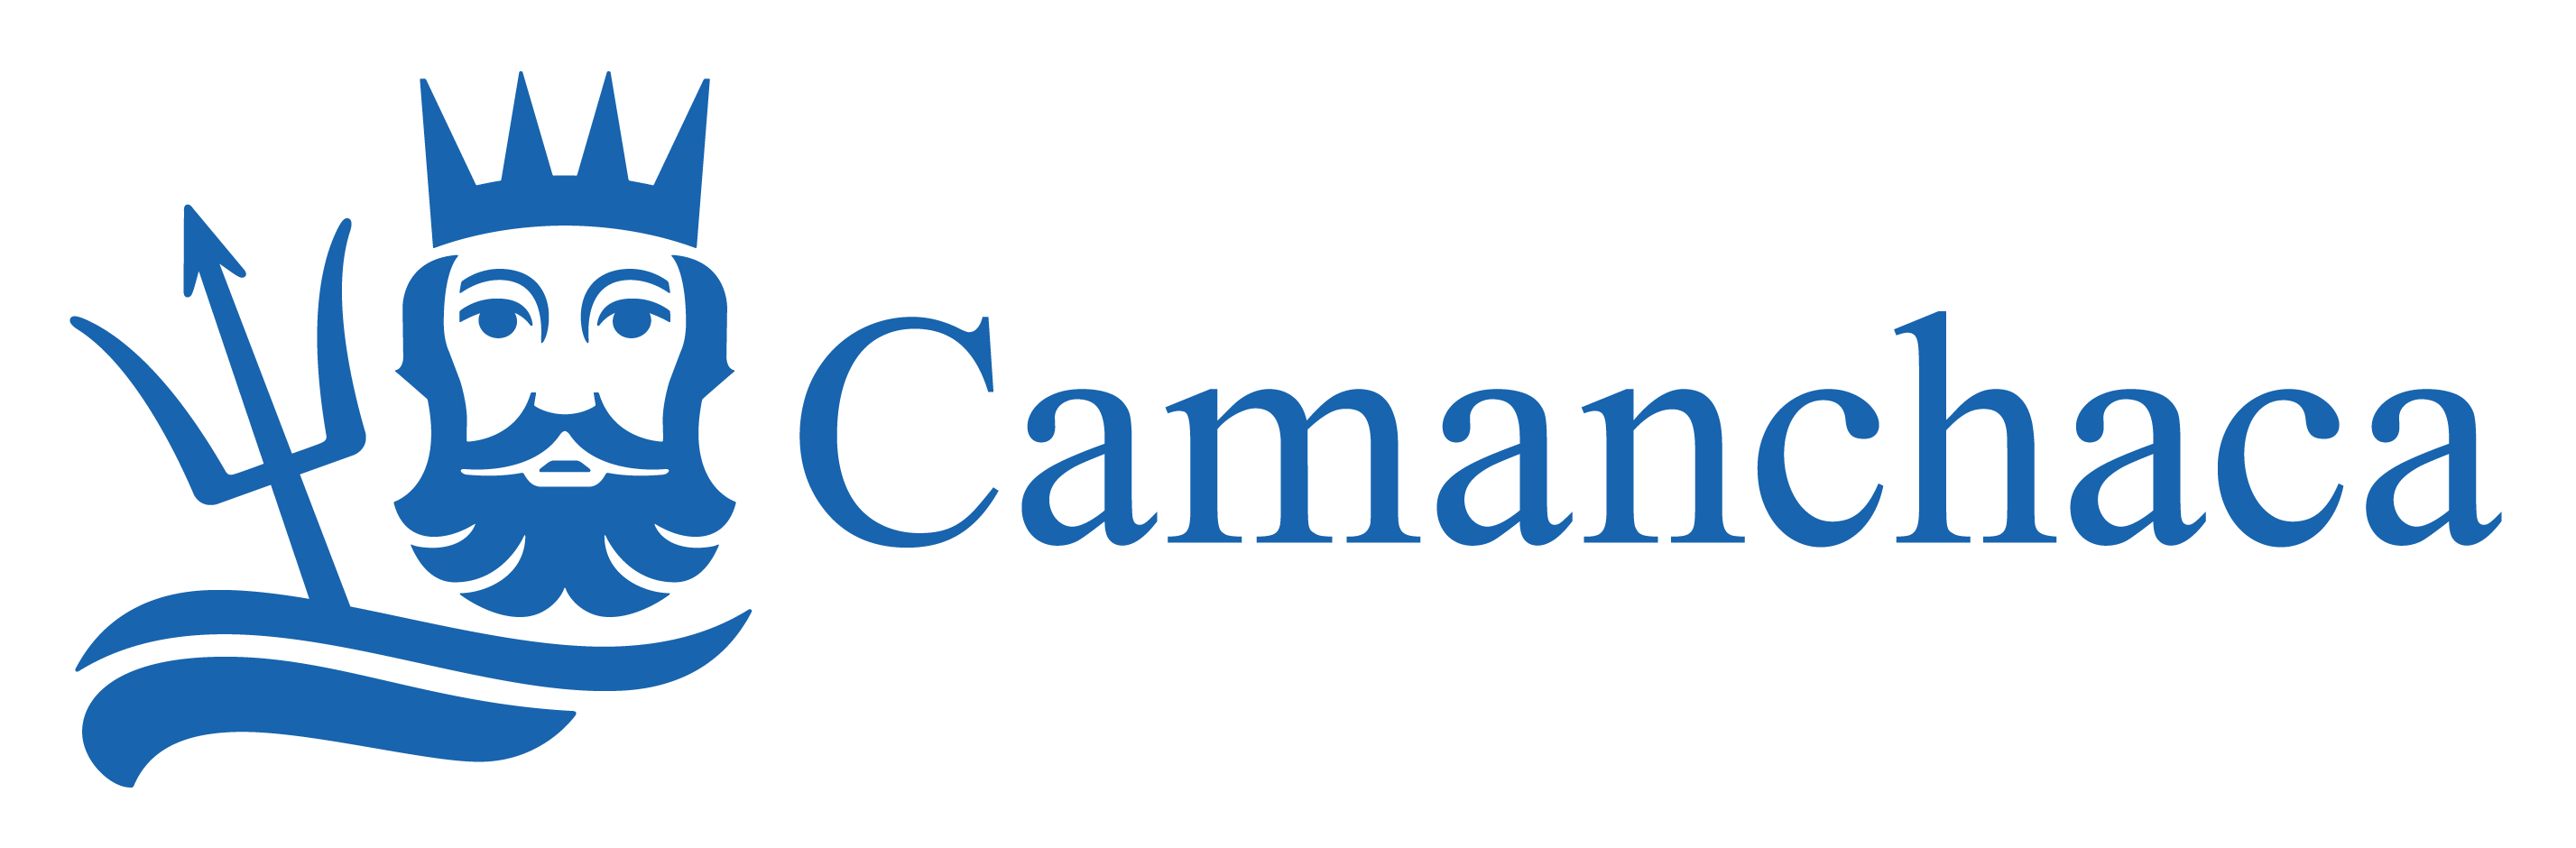 Logotipo-Camanchaca-Horizontal-RGB-para-pantalla